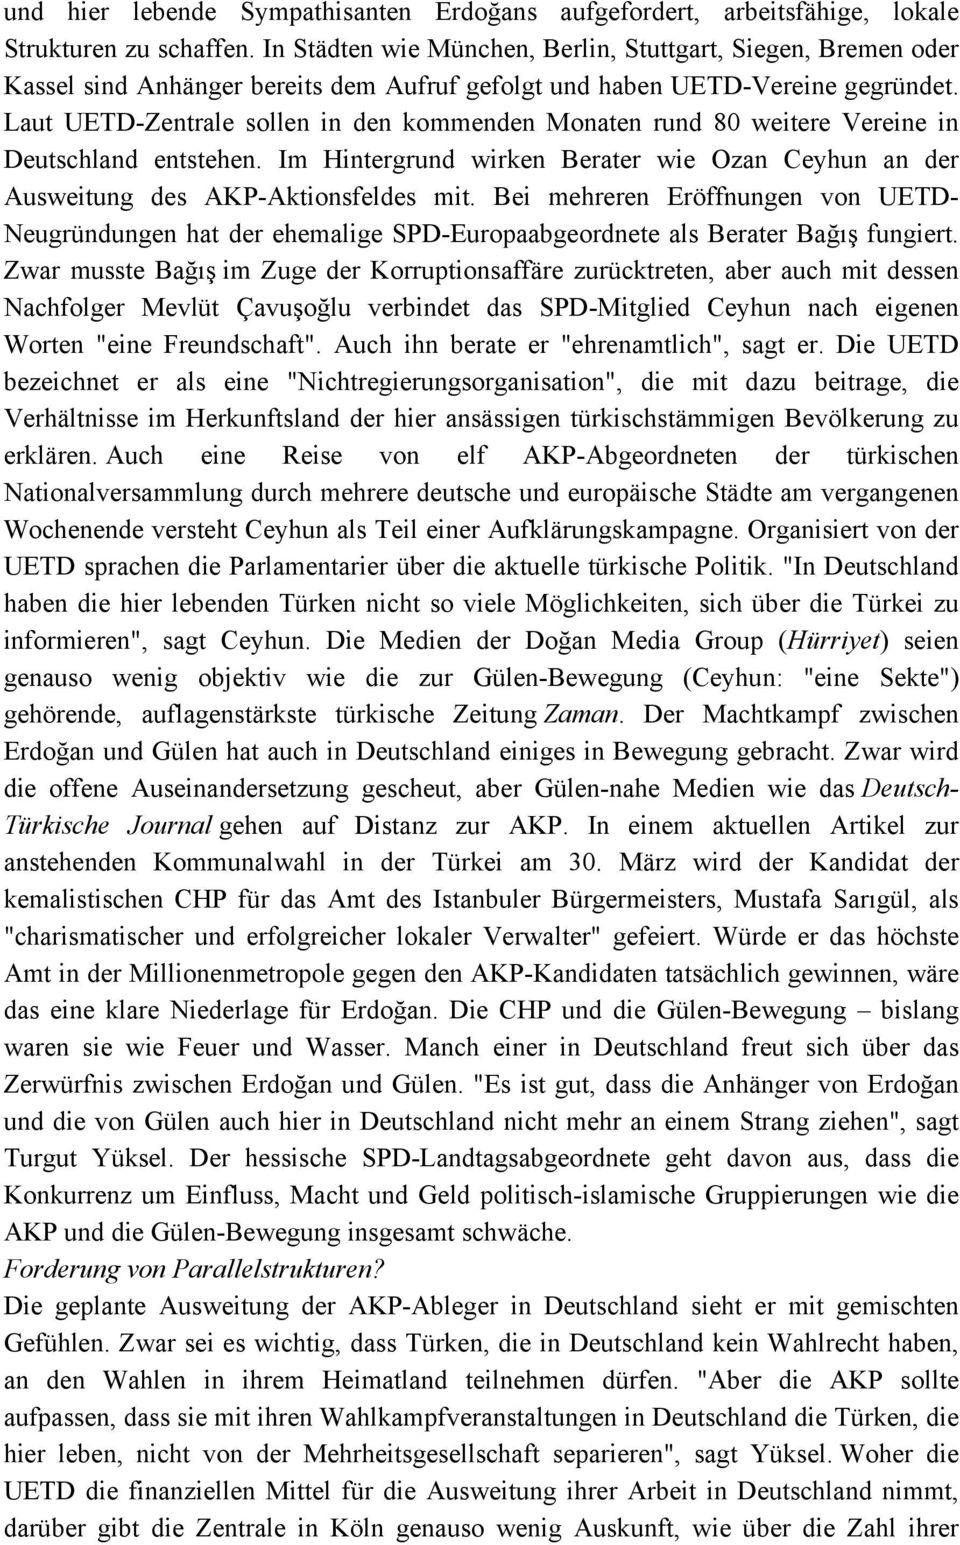 Laut UETD-Zentrale sollen in den kommenden Monaten rund 80 weitere Vereine in Deutschland entstehen. Im Hintergrund wirken Berater wie Ozan Ceyhun an der Ausweitung des AKP-Aktionsfeldes mit.